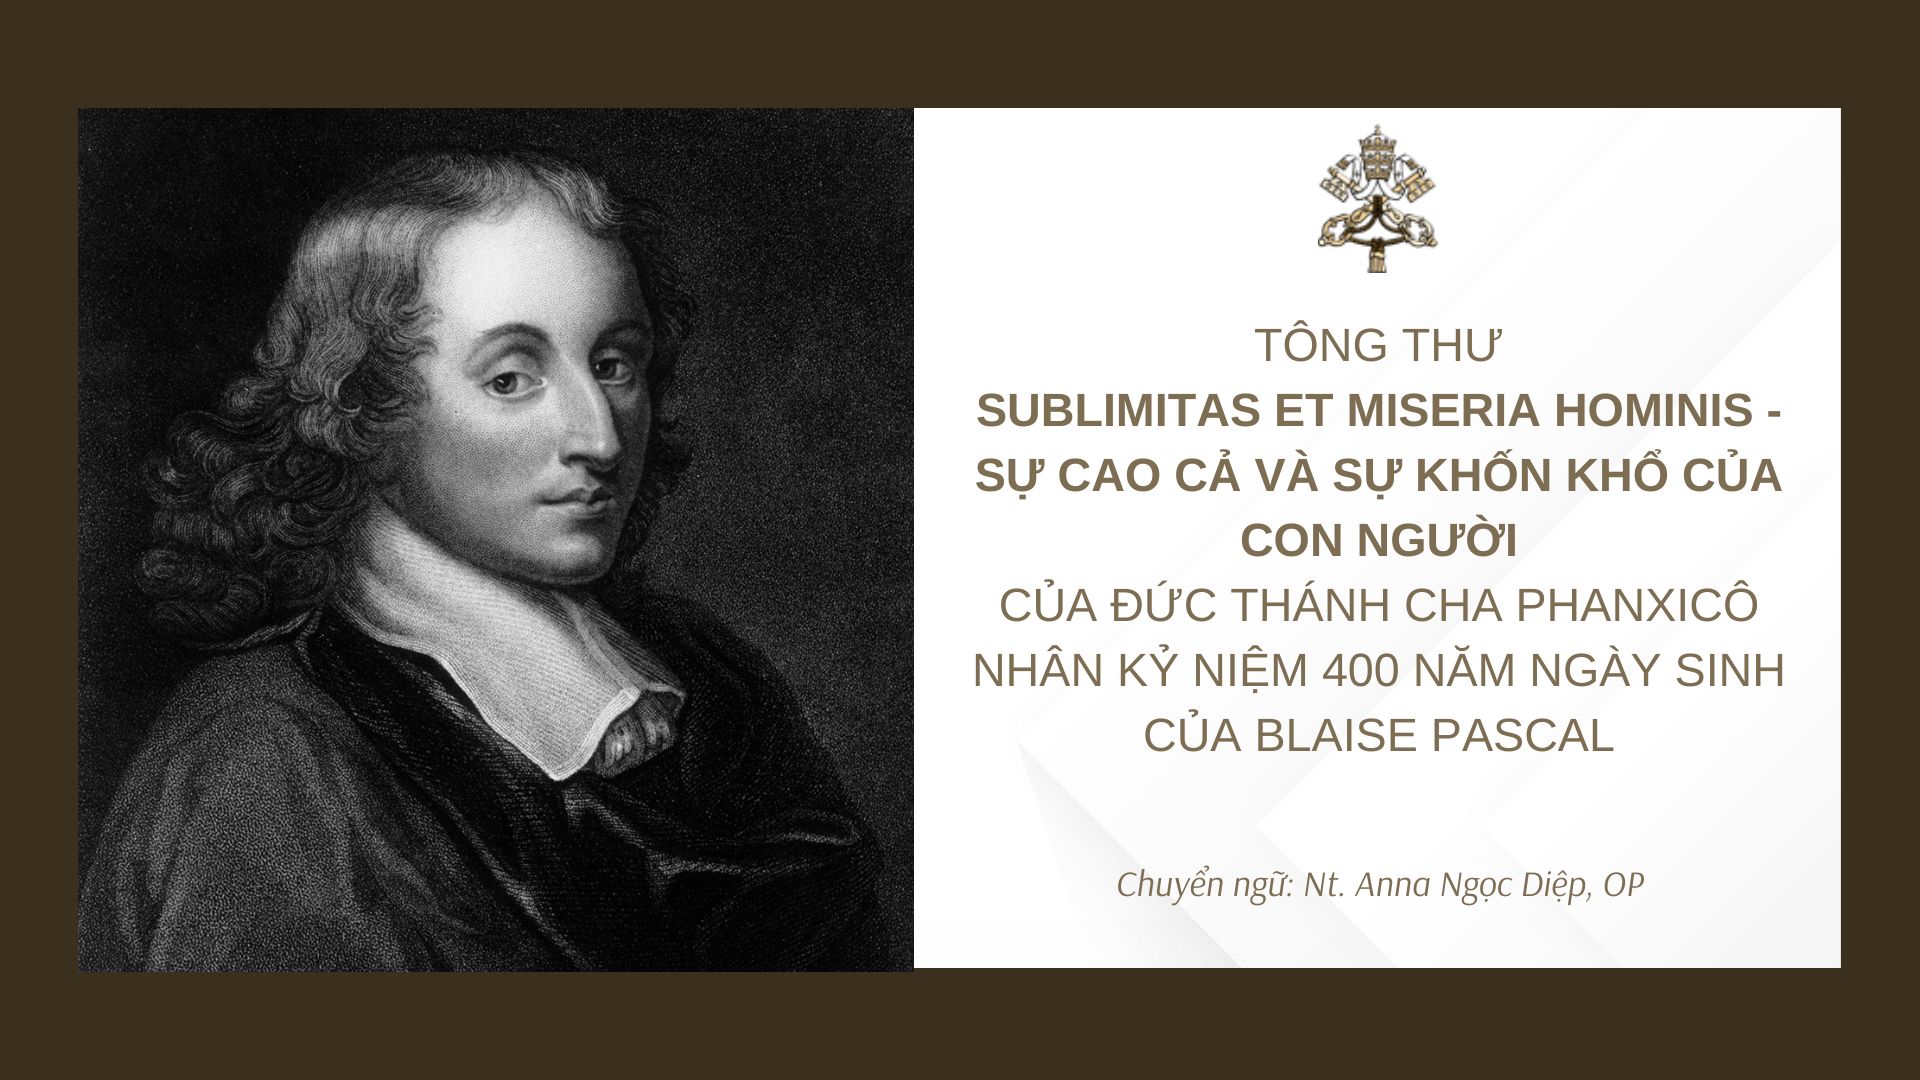 Toàn văn Tông thư của Đức Thánh Cha Phanxicô nhân kỷ niệm 400 năm ngày sinh của Blaise Pascal